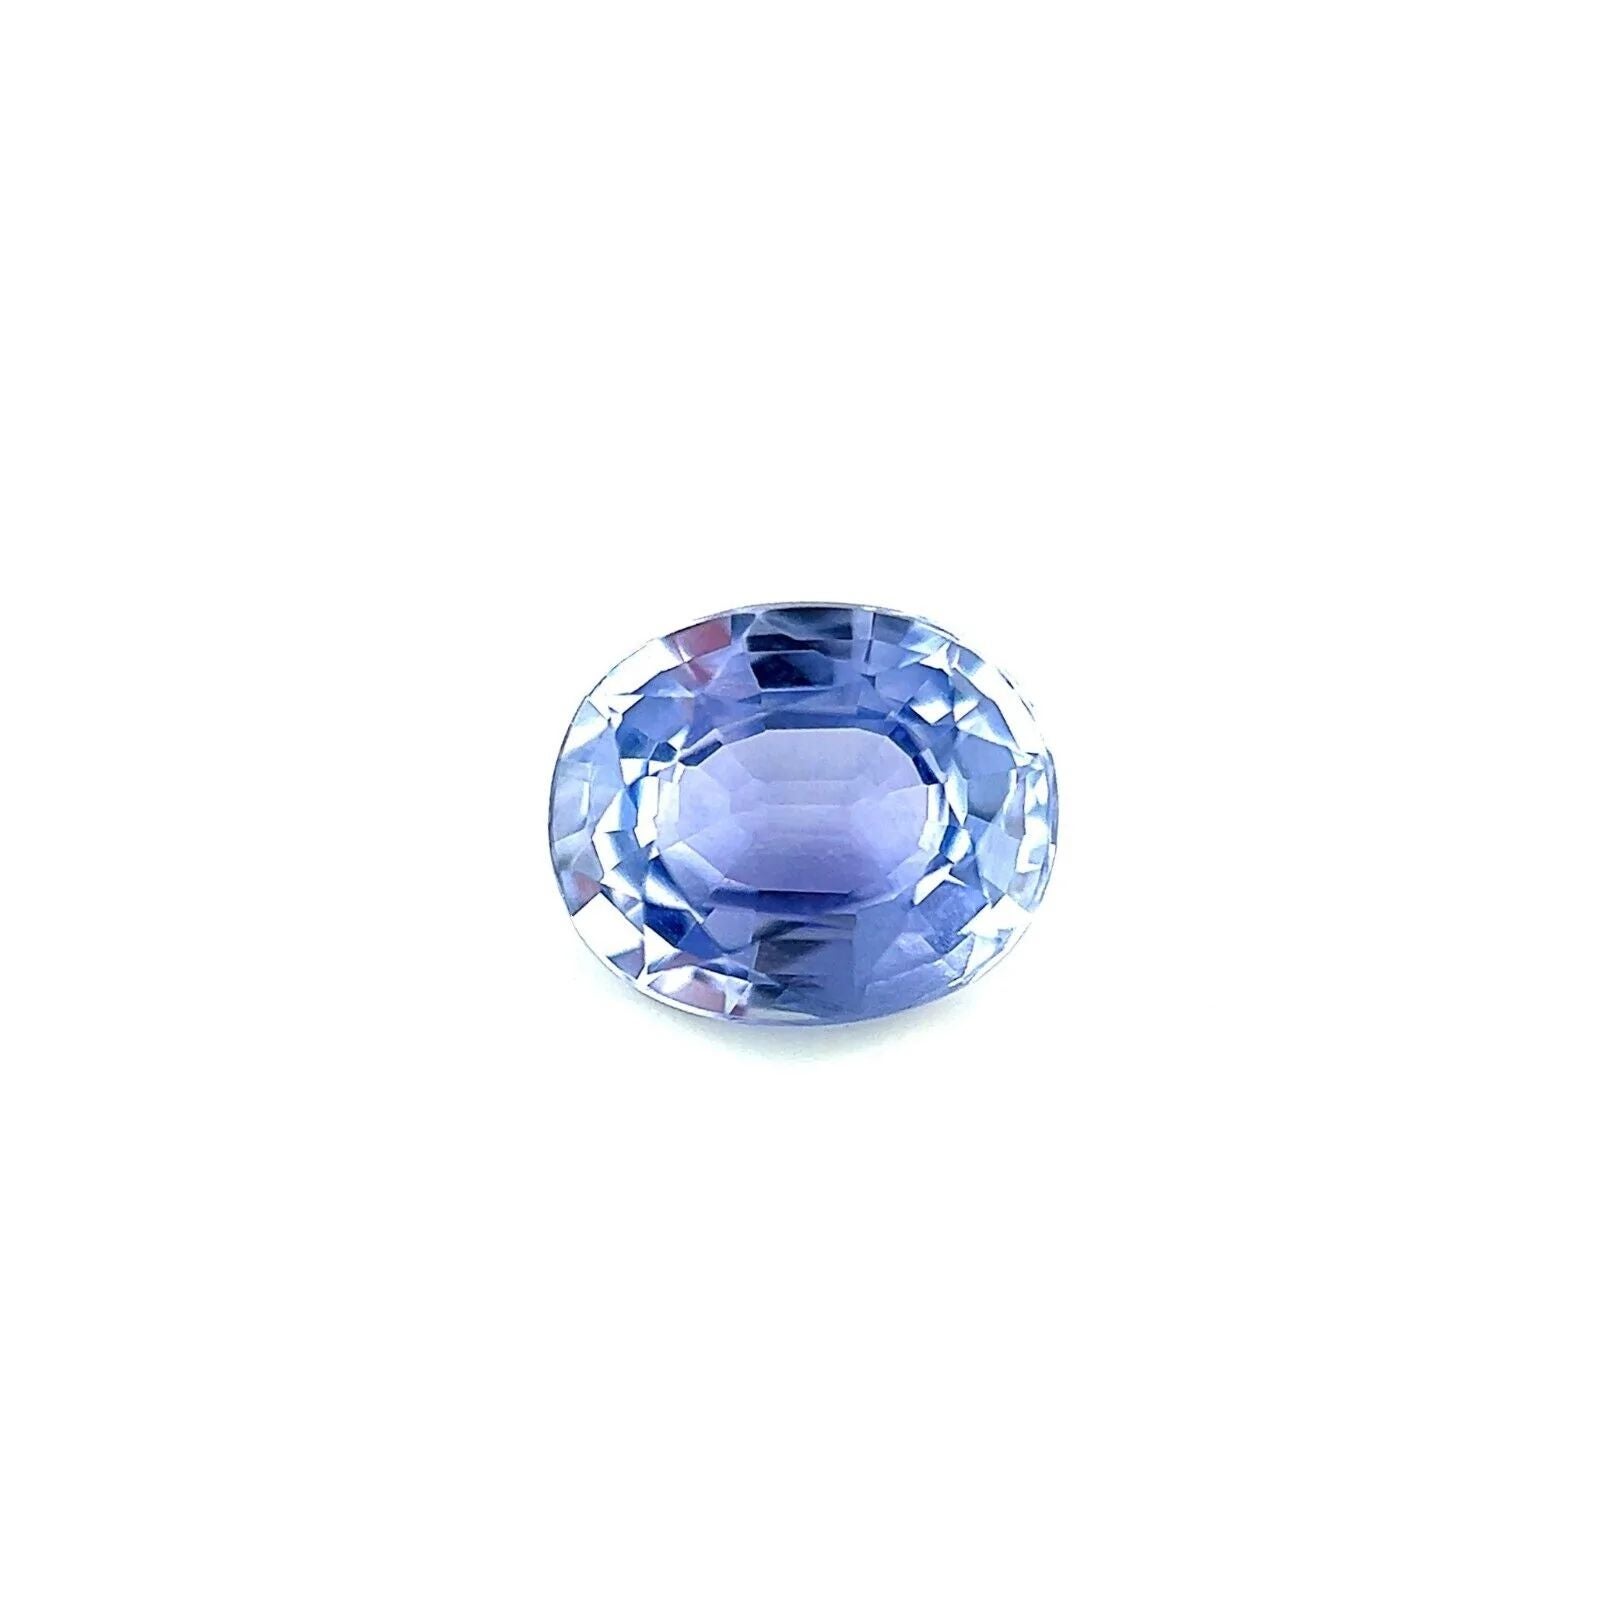 Unique Fine Ceylon Blue Violet Sapphire 0.82ct Oval Loose Cut Blue Rare VS For Sale